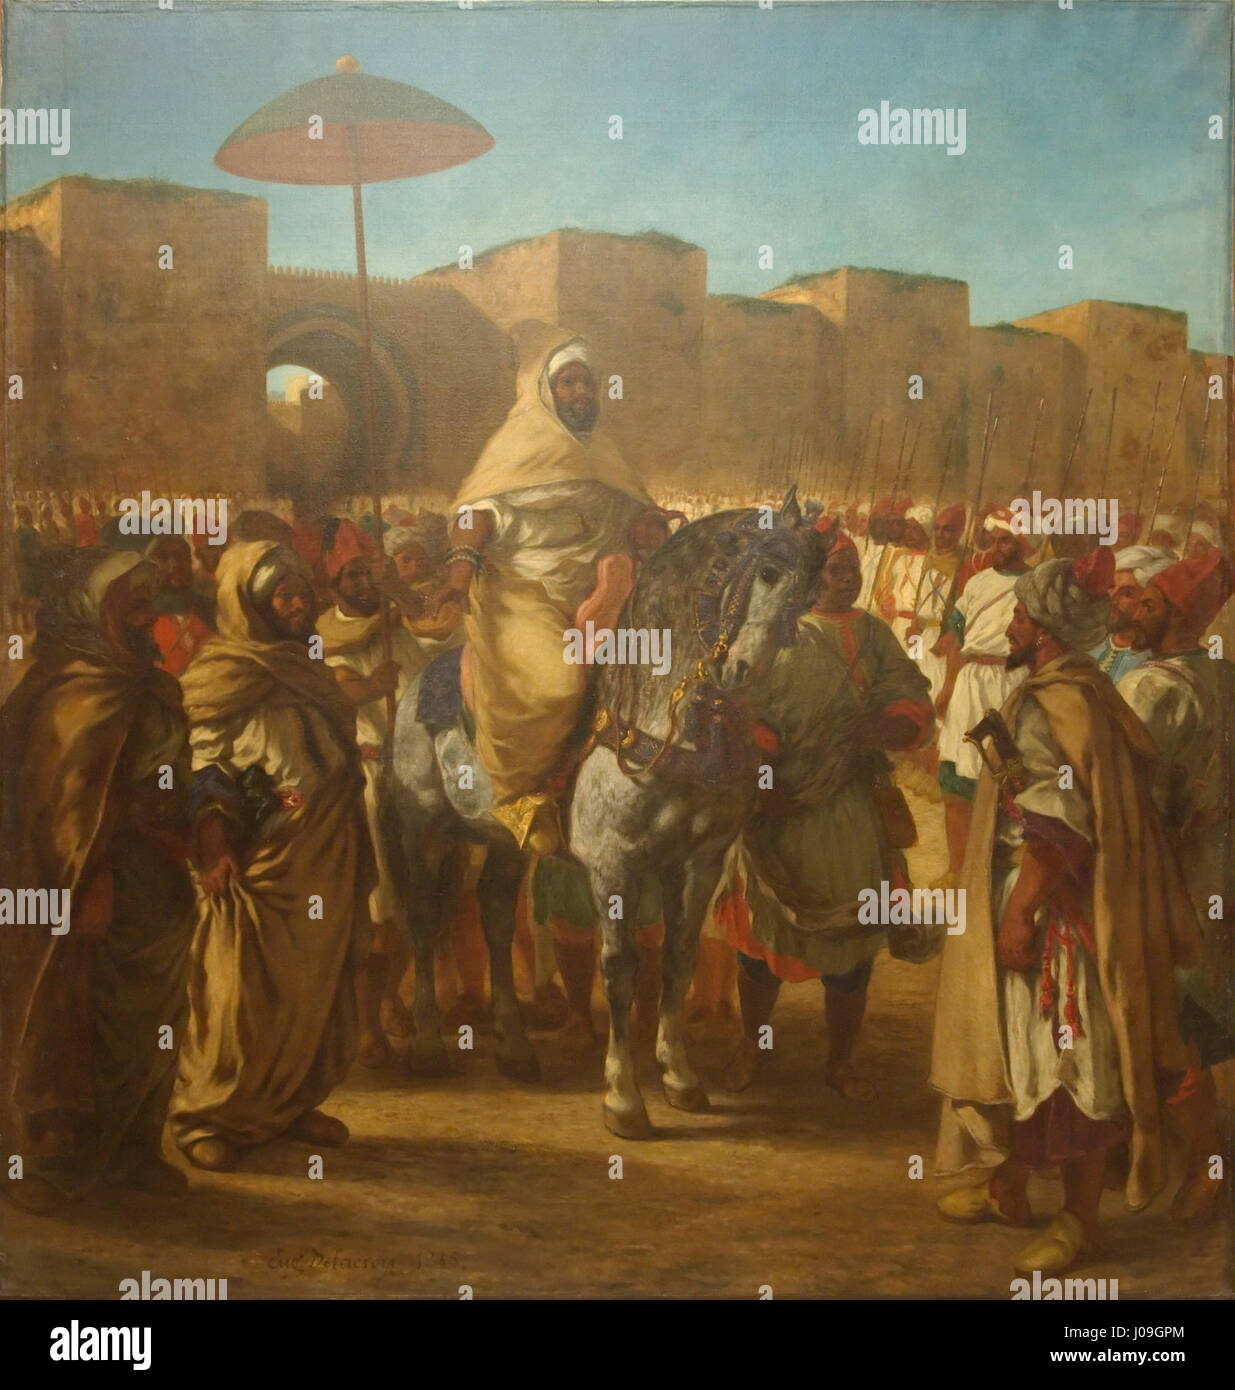 Maulay abd-er-Rahman, sultan du Maroc, sortant de son palais de Maknès, entouré de sa garde et de ses principaux officiers, 1845 - Eugène Delacroix - Charenton-Saint-Mauric 1798 - Paris 1863 Stock Photo